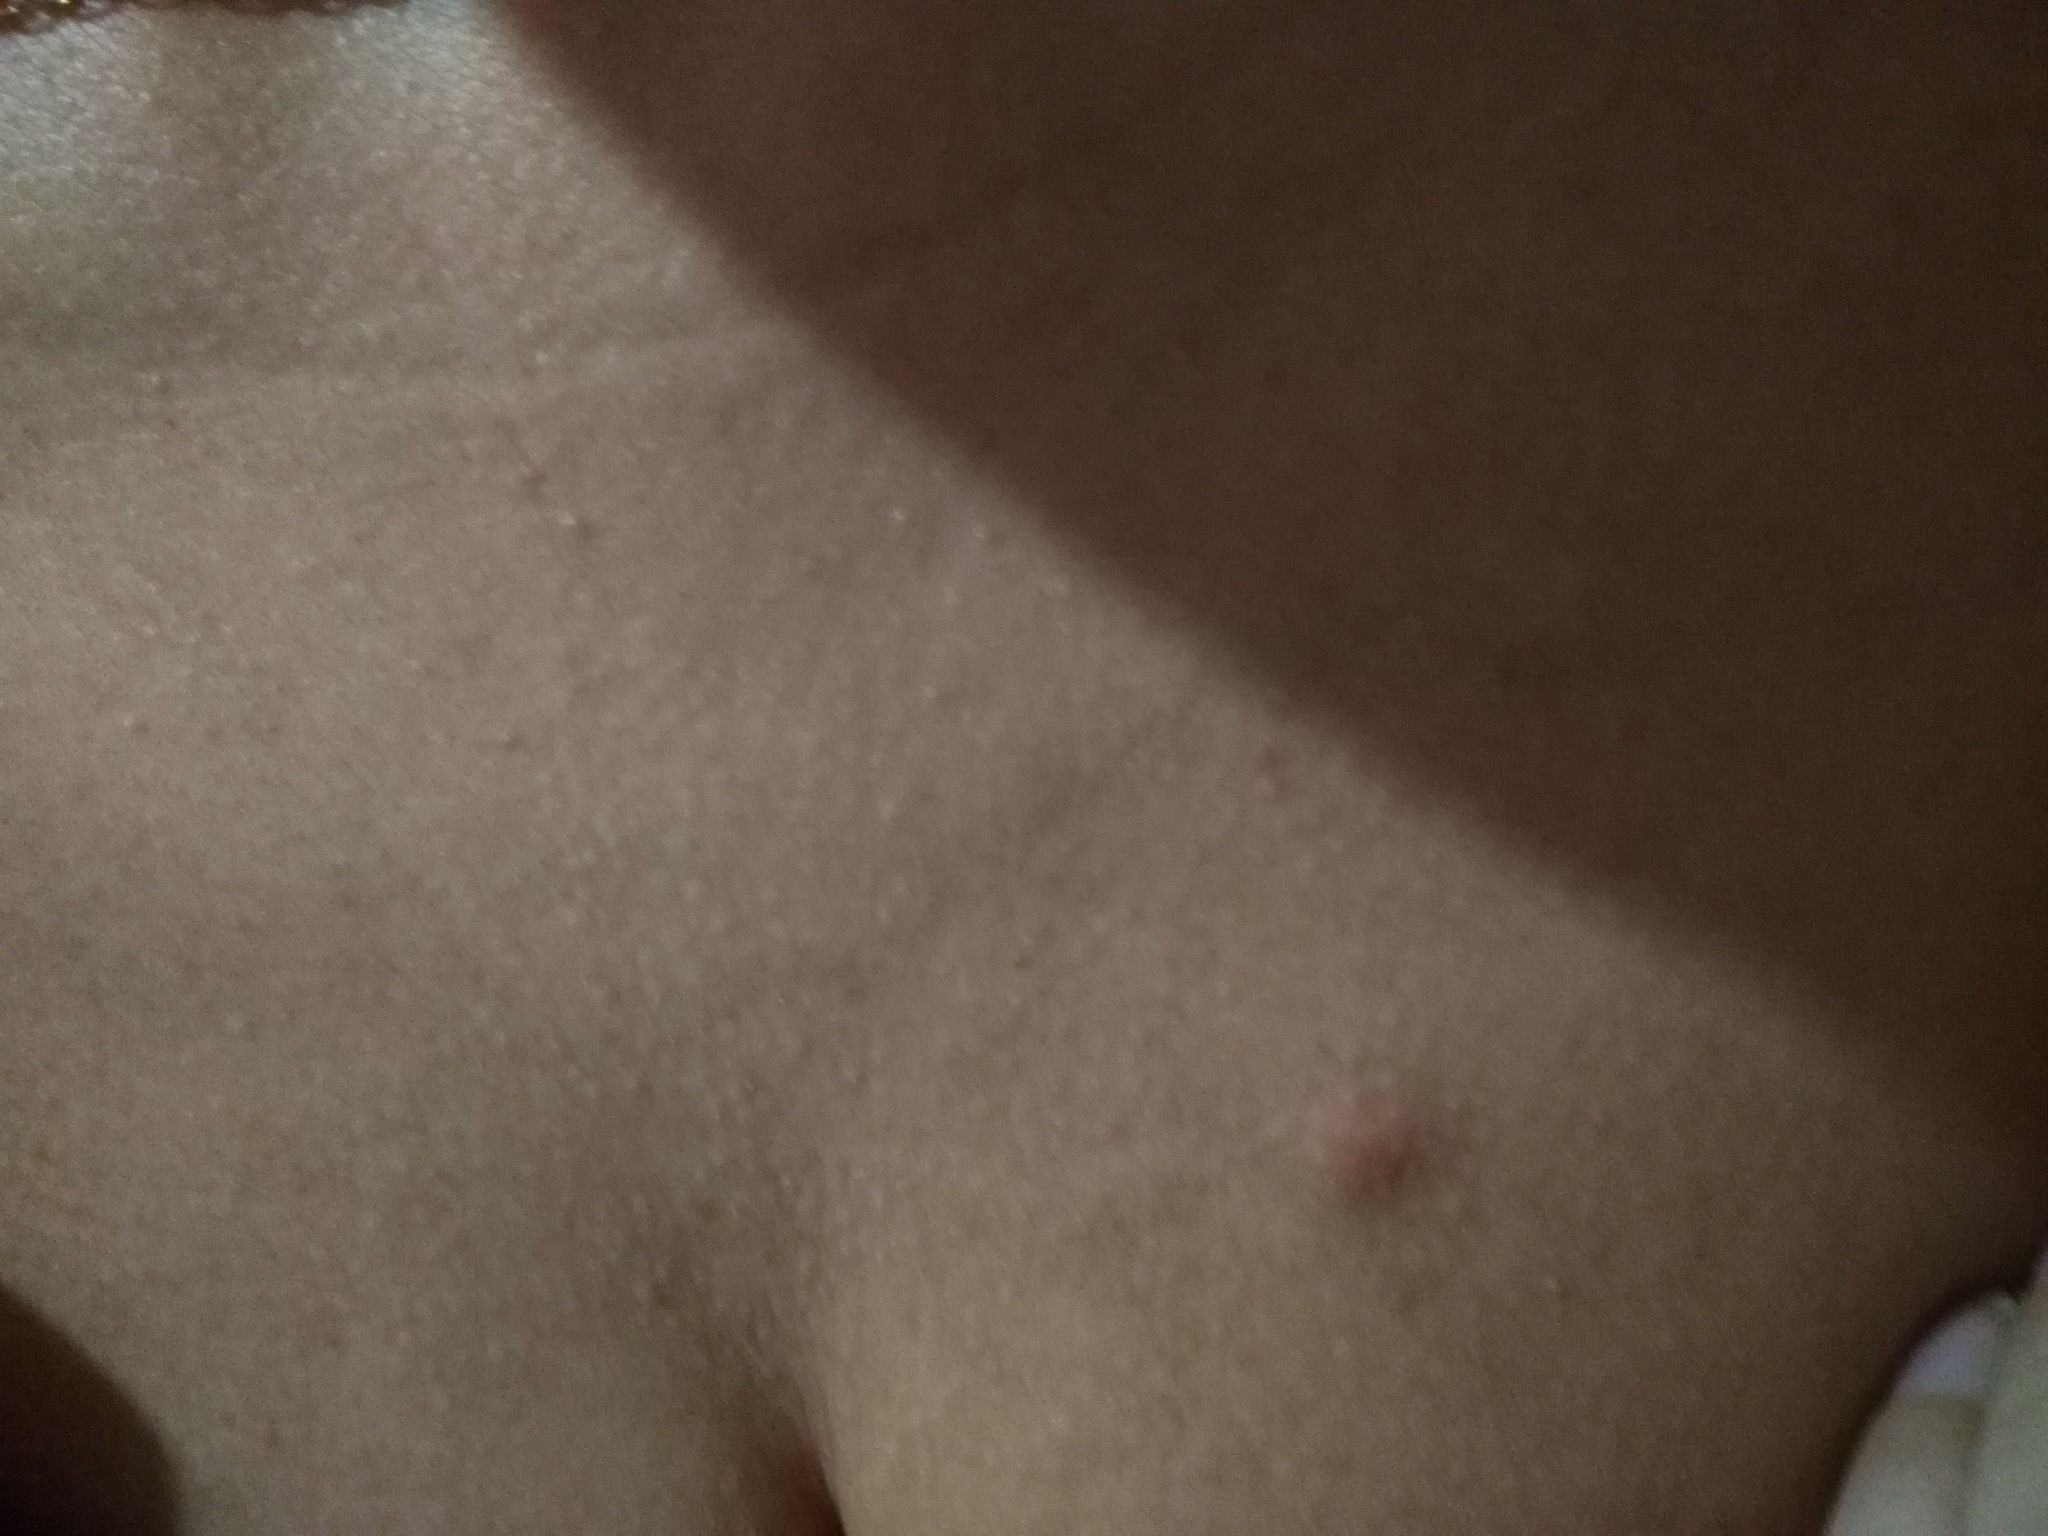 шишка на левой груди у женщин фото 37